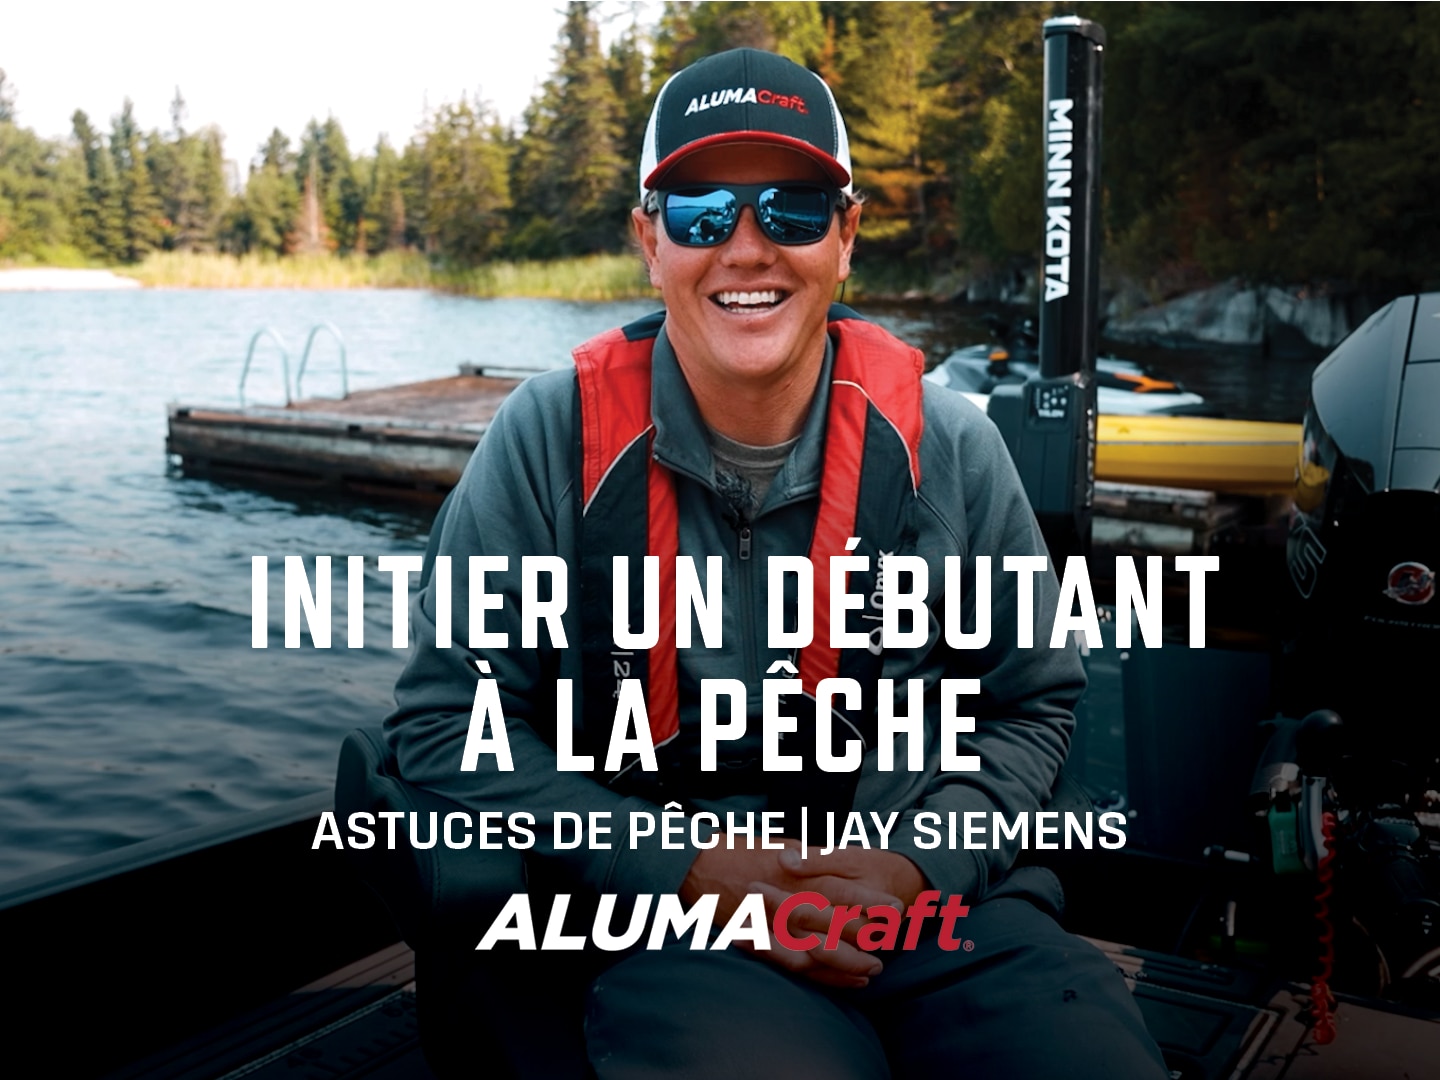 Jay Siemens, initier un débutant à la pêche